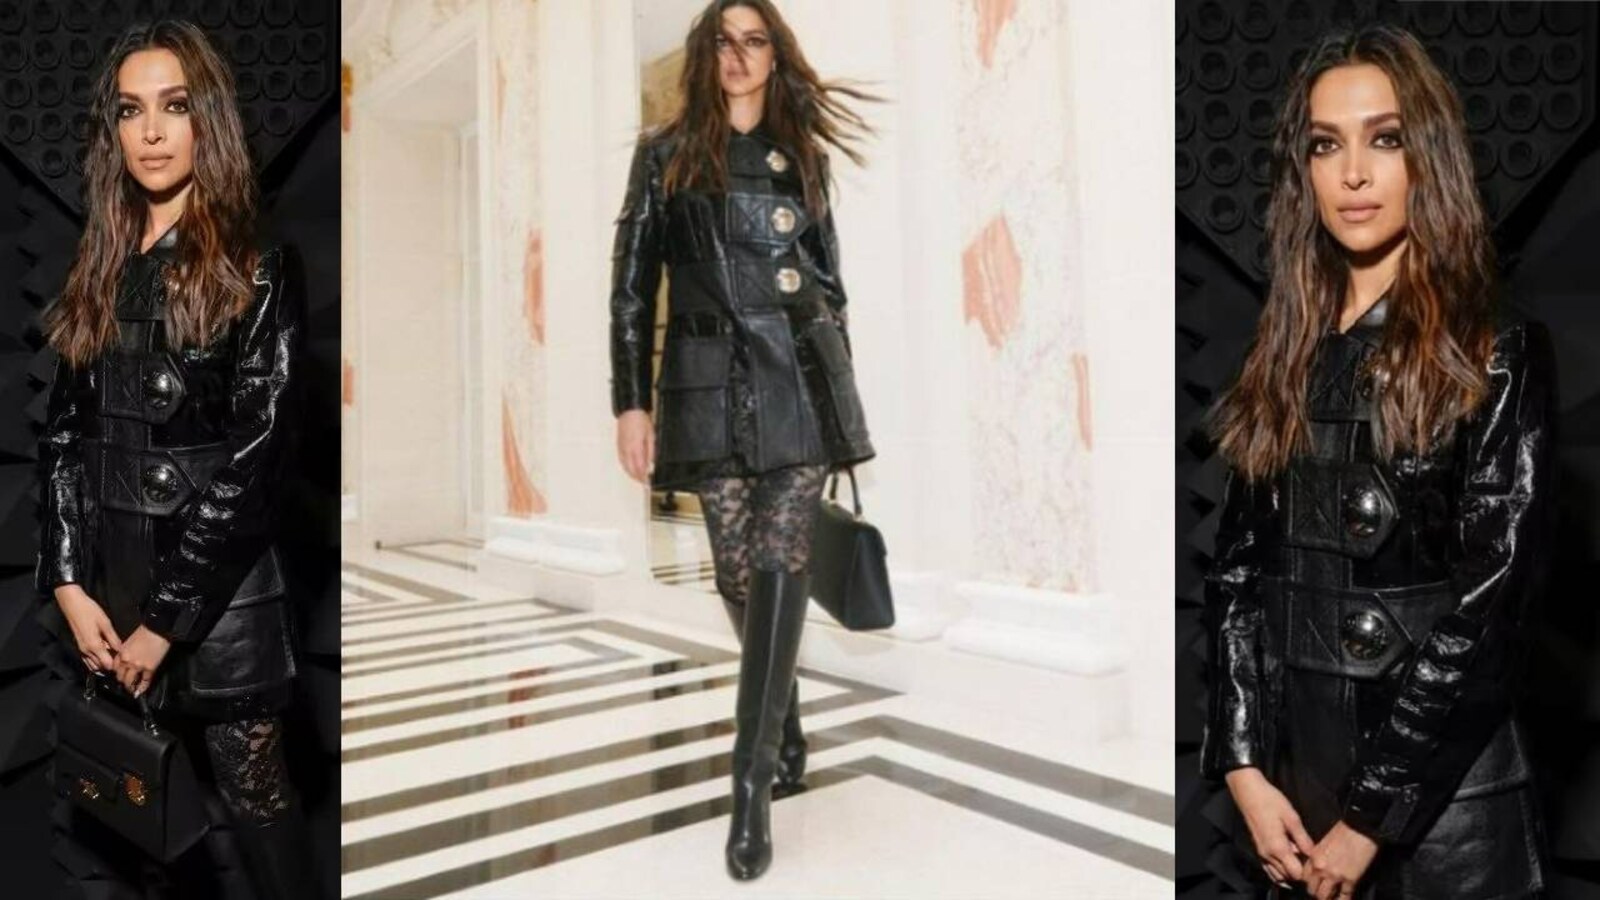 After Louis Vuitton, Deepika Padukone Named Brand Ambassador Of